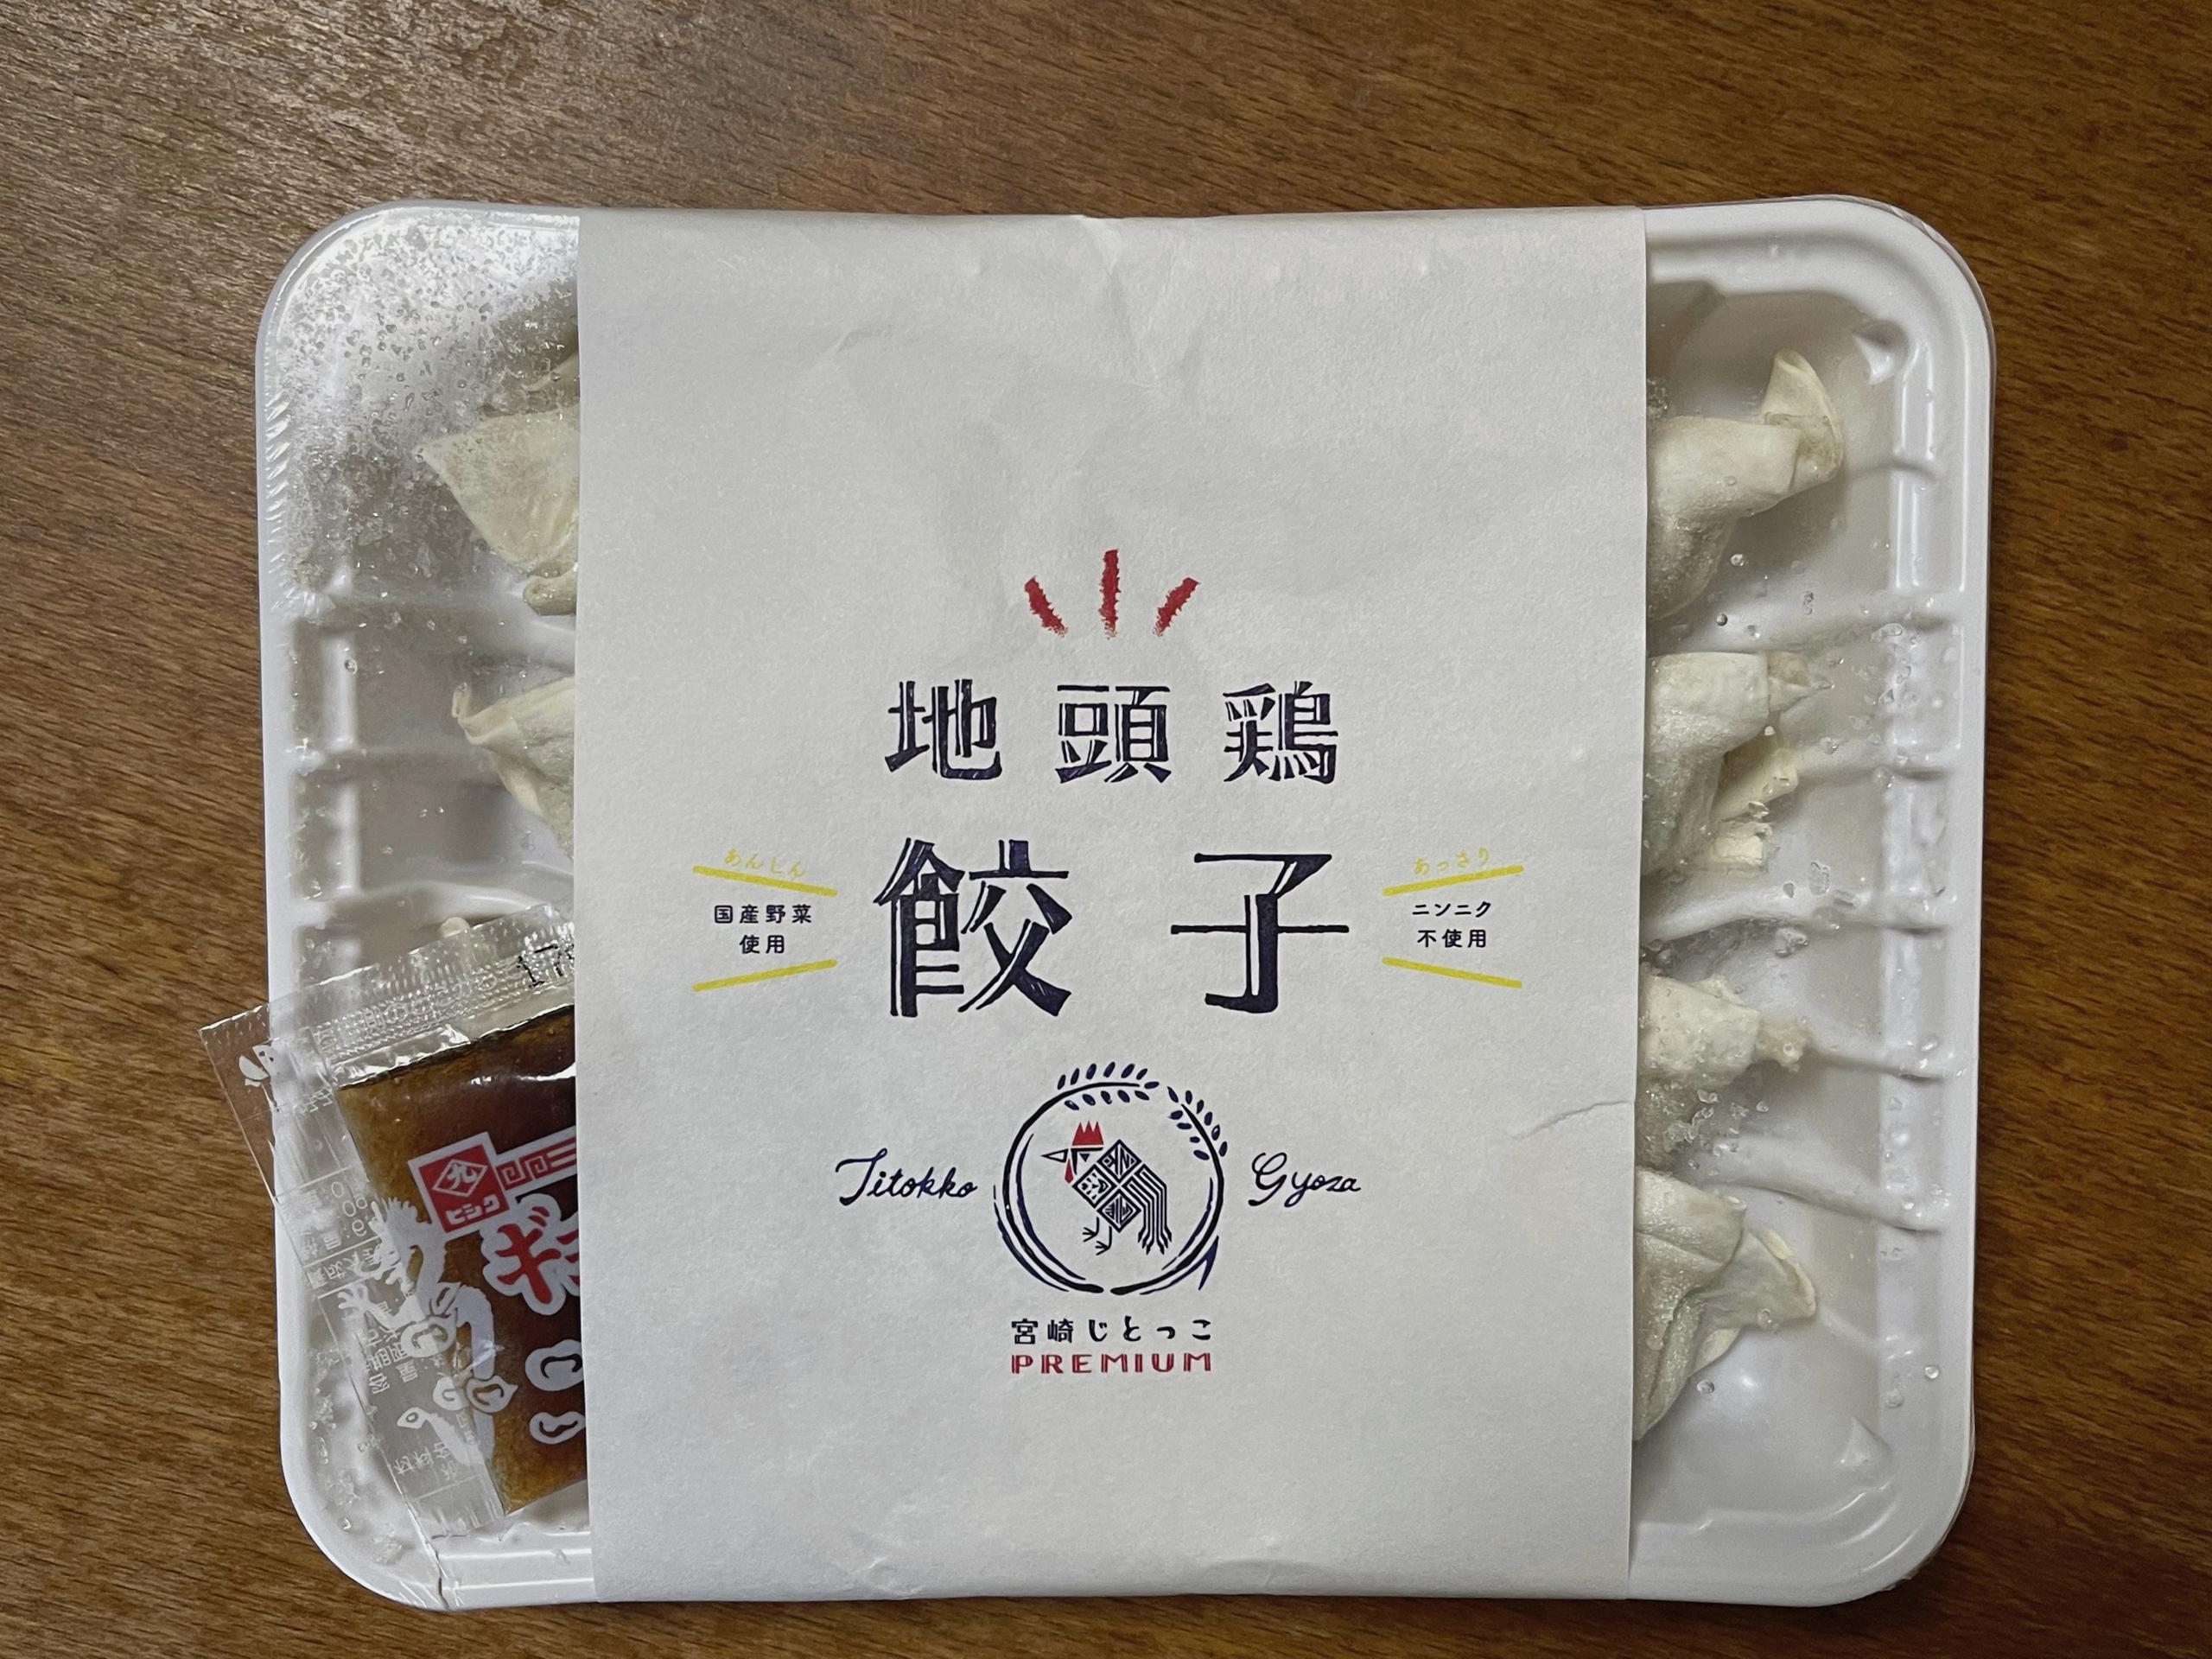 宮崎ぎょうざ購入額日本一【宮崎地鶏頭】じどっこ餃子を食べてみました